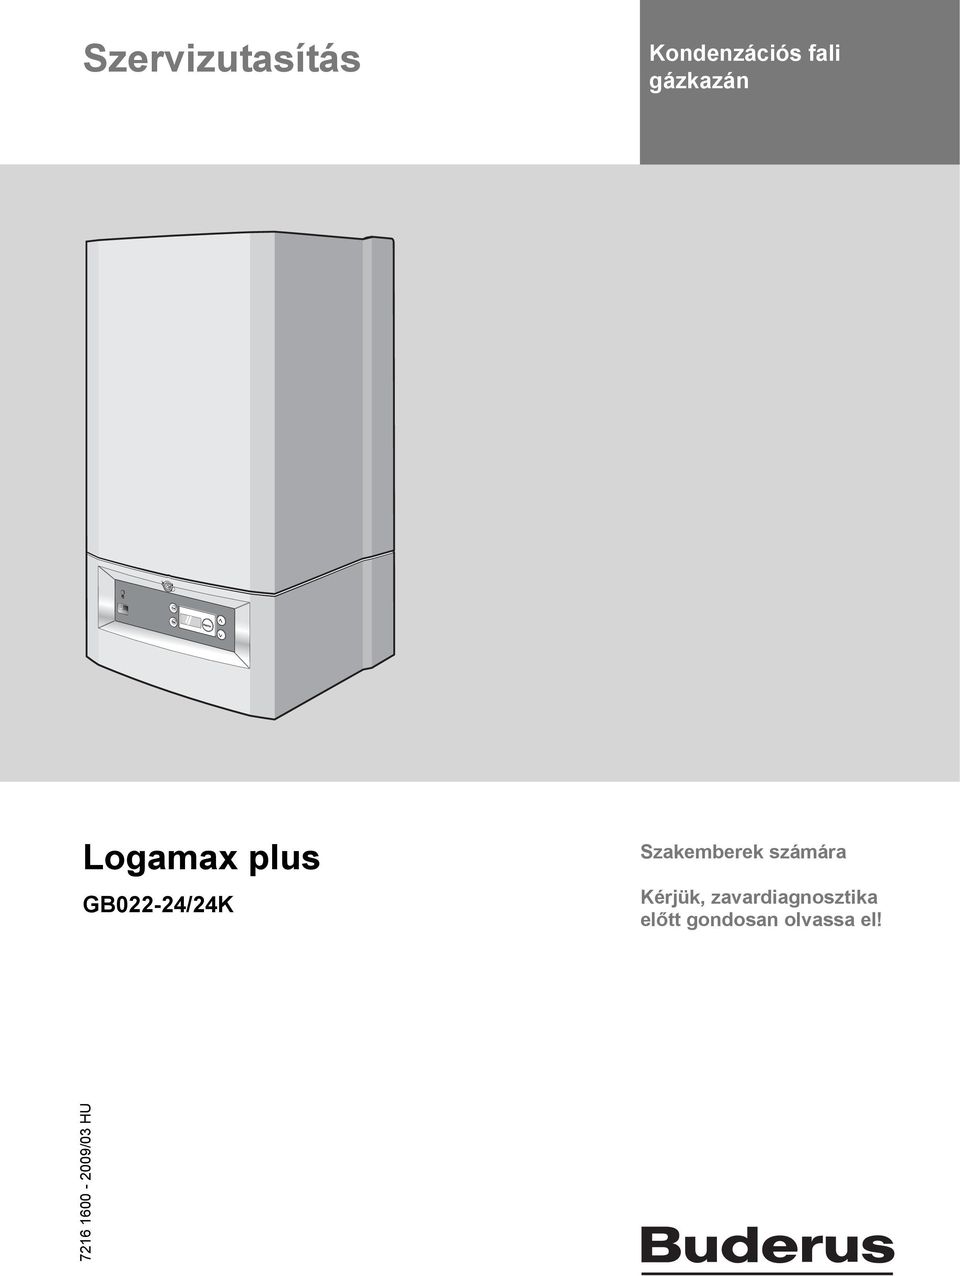 Szervizutasítás. Logamax plus. Kondenzációs fali gázkazán GB022-24/24K.  Szakemberek számára. Kérjük, zavardiagnosztika előtt gondosan olvassa el! -  PDF Ingyenes letöltés